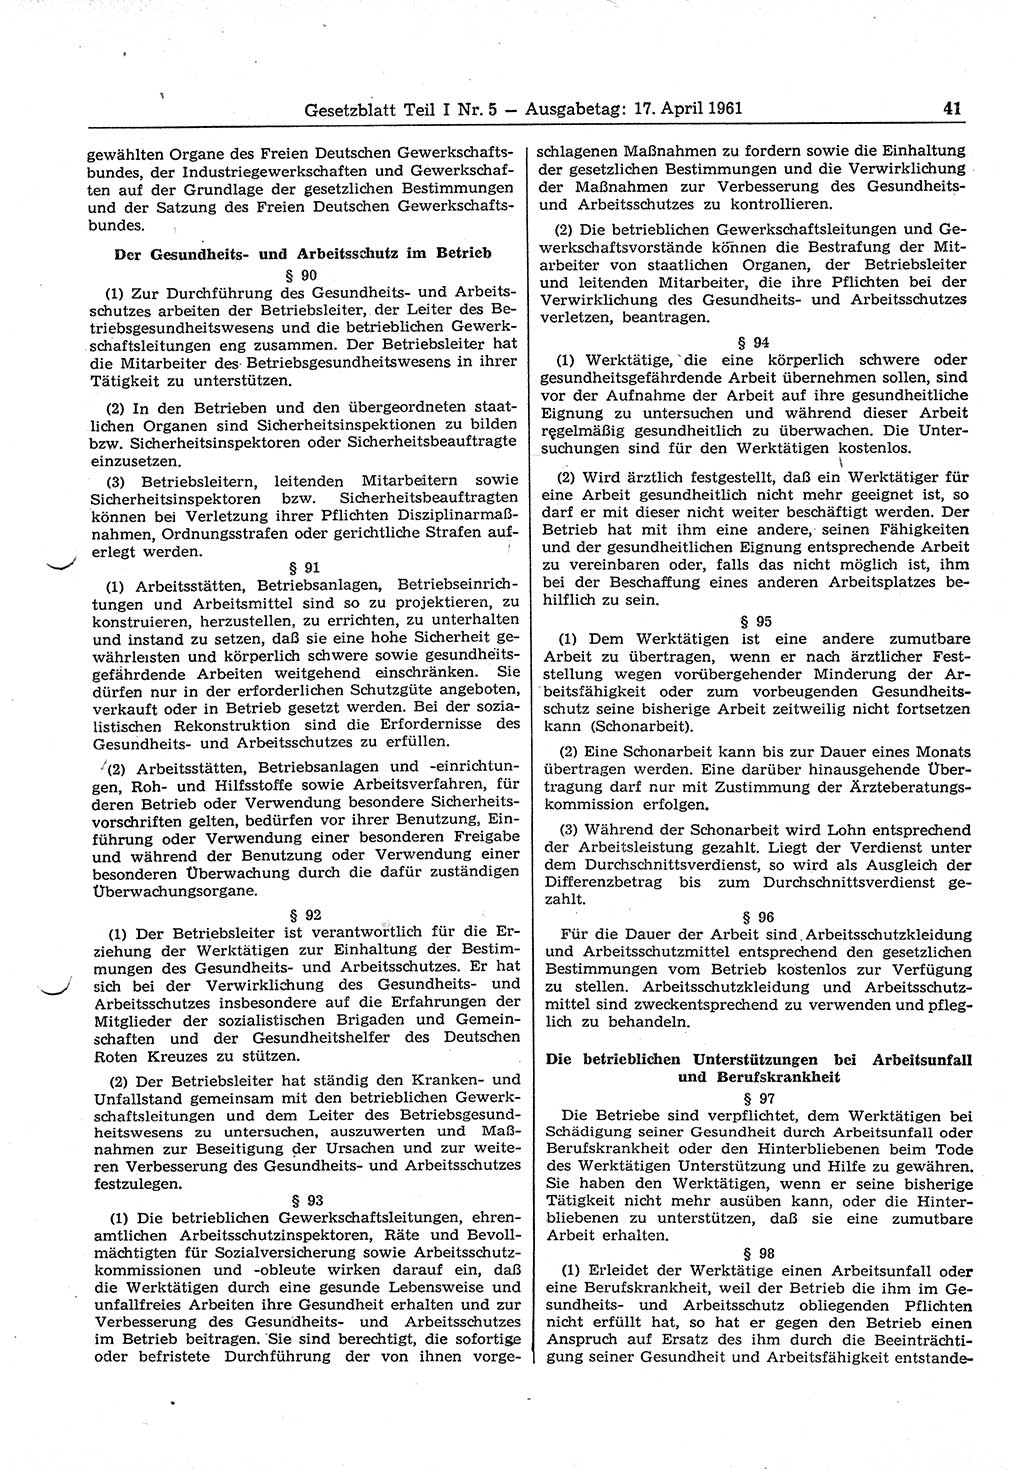 Gesetzblatt (GBl.) der Deutschen Demokratischen Republik (DDR) Teil Ⅰ 1961, Seite 41 (GBl. DDR Ⅰ 1961, S. 41)